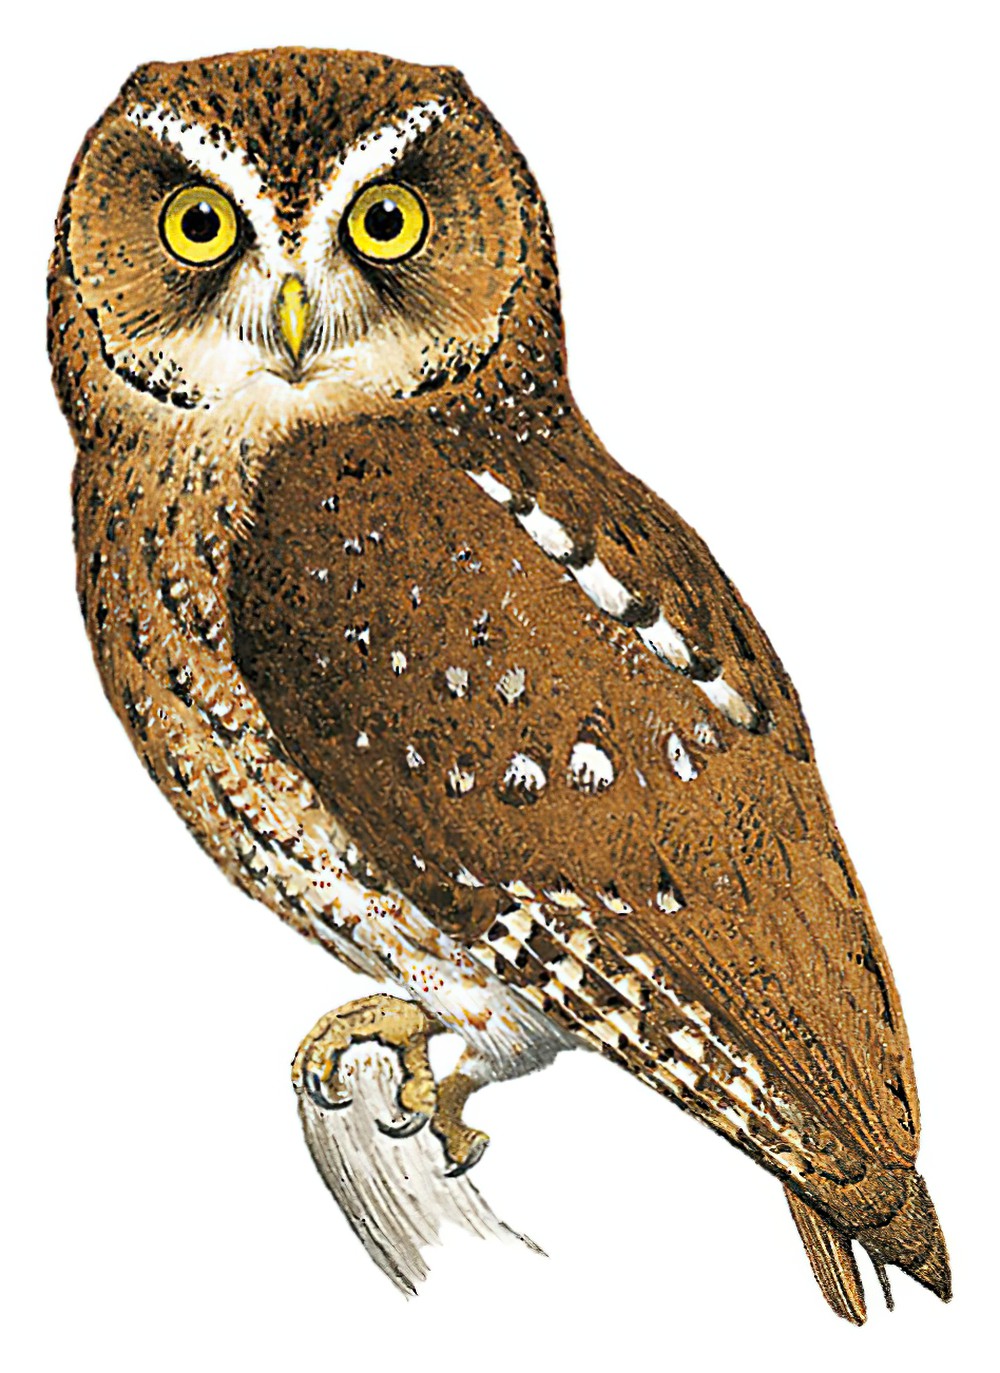 圣多美角鸮 / Sao Tome Scops Owl / Otus hartlaubi